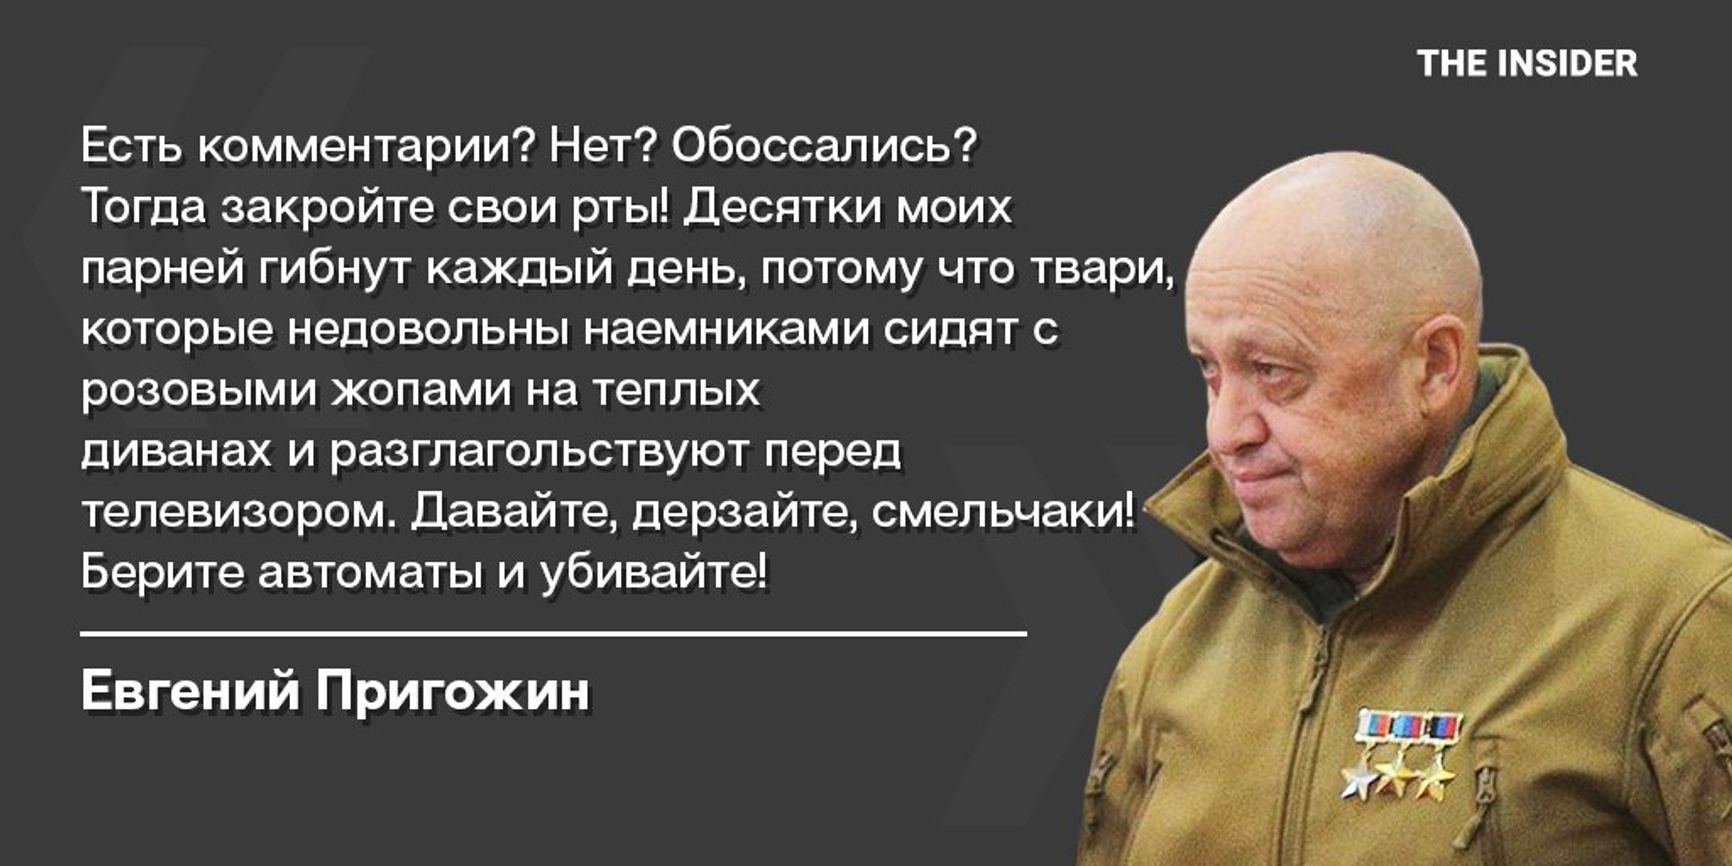 Основатель ЧВК Вагнера Евгений Пригожин